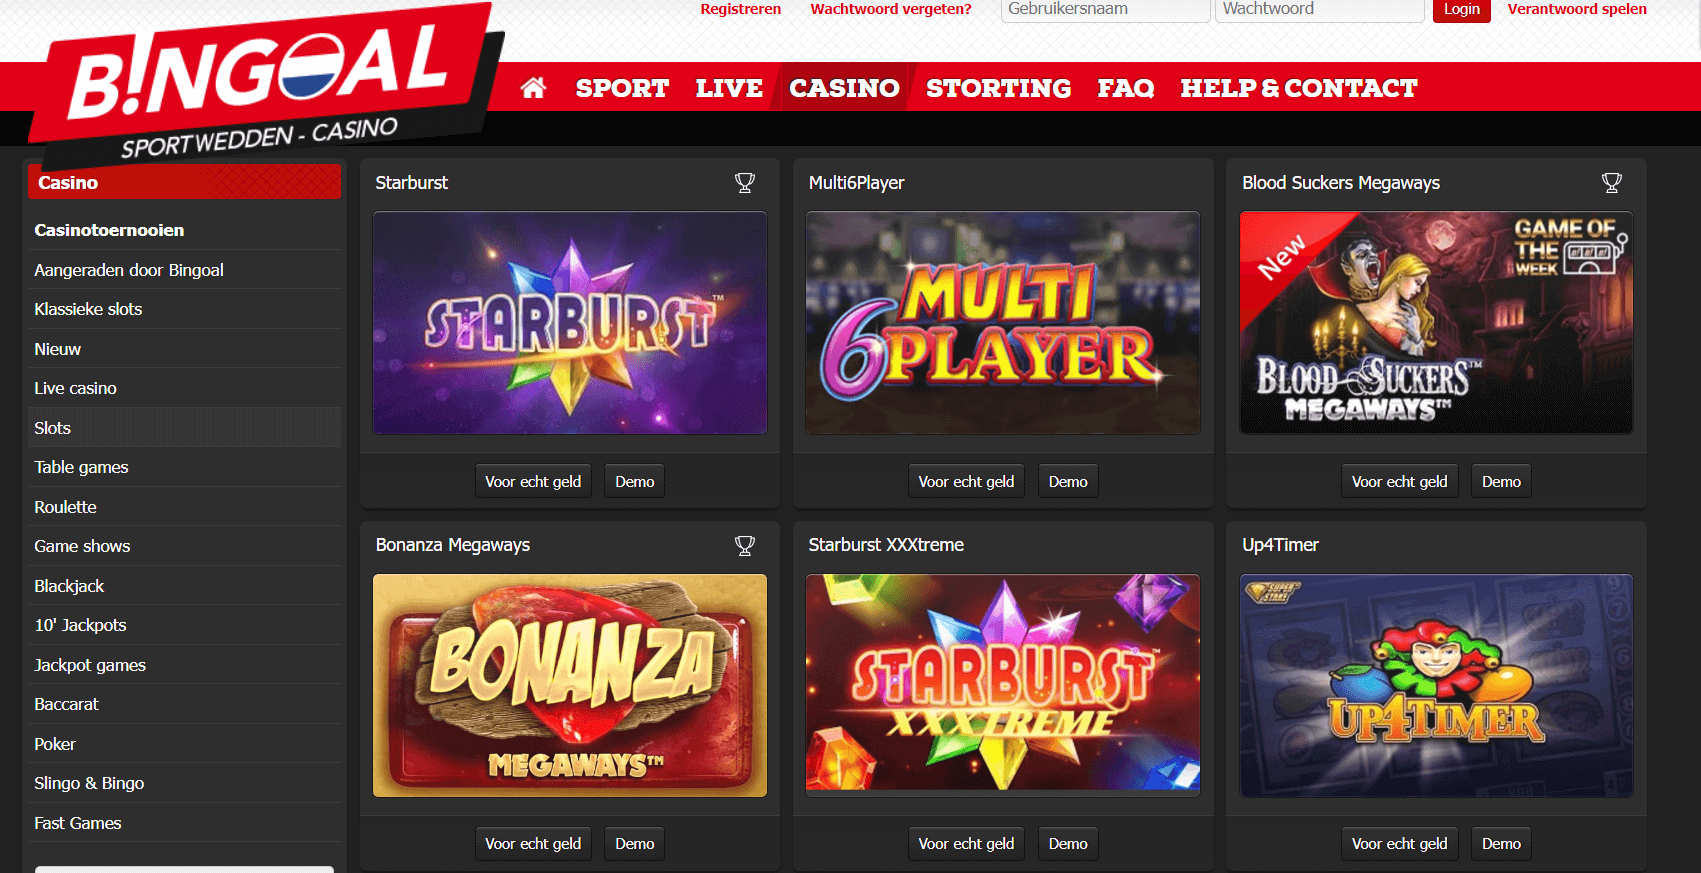 Bingoal casino slots